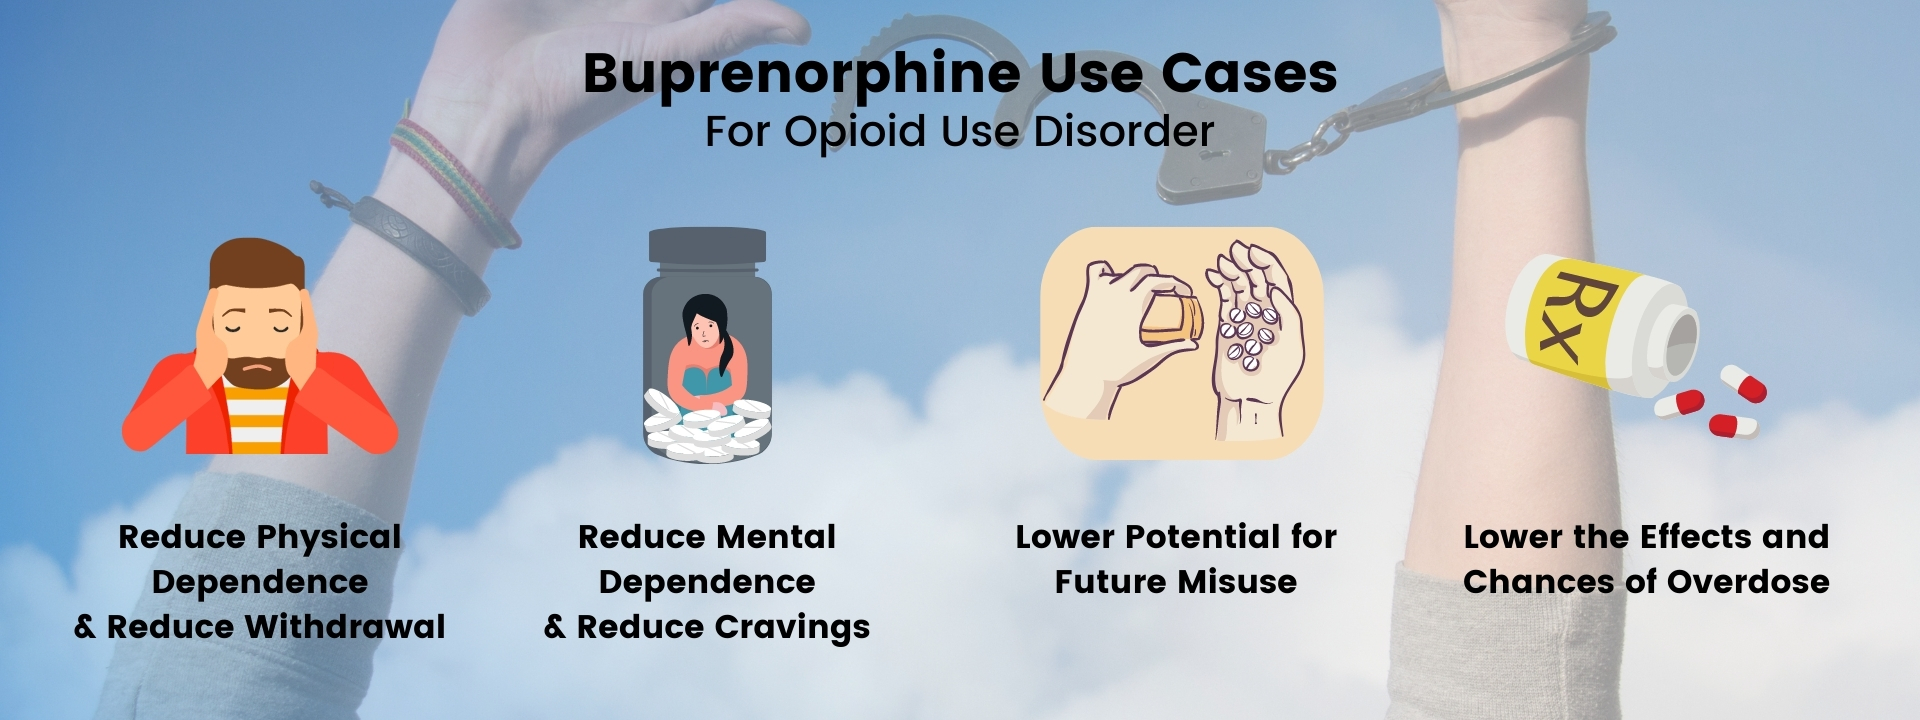 Buprenorphine use cases